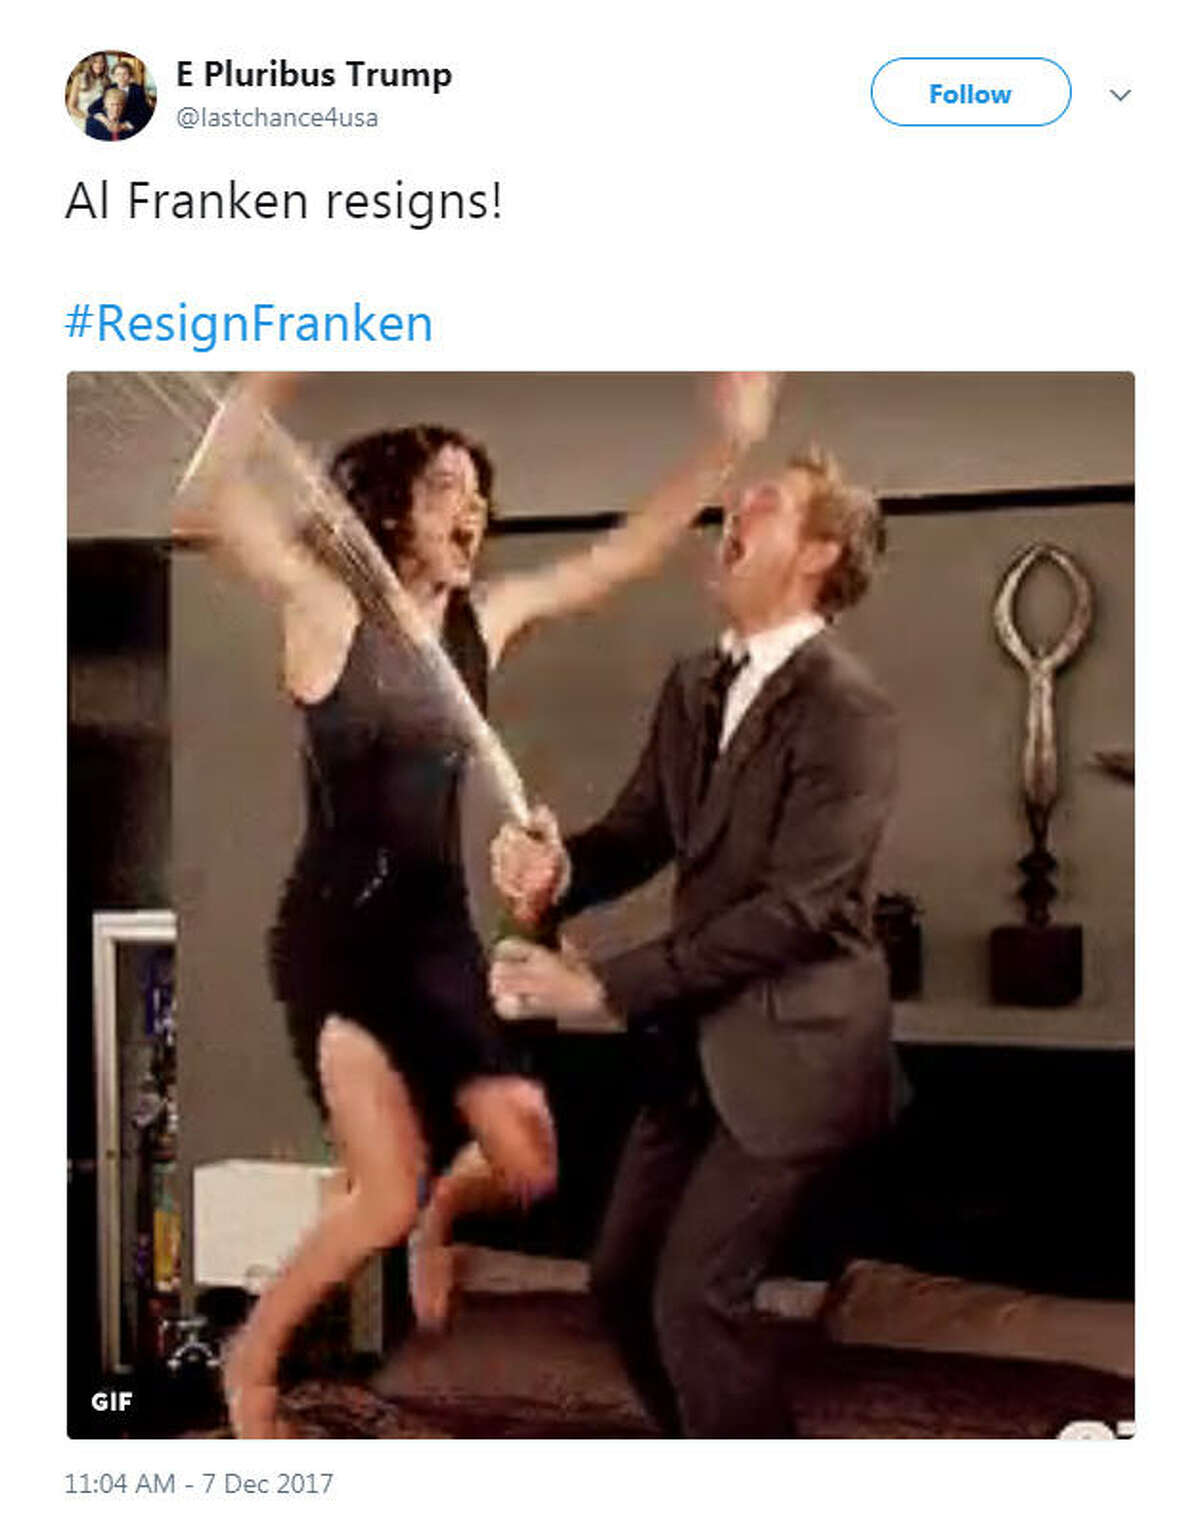 "Al Franken resigns! #ResignFranken" Source: Twitter